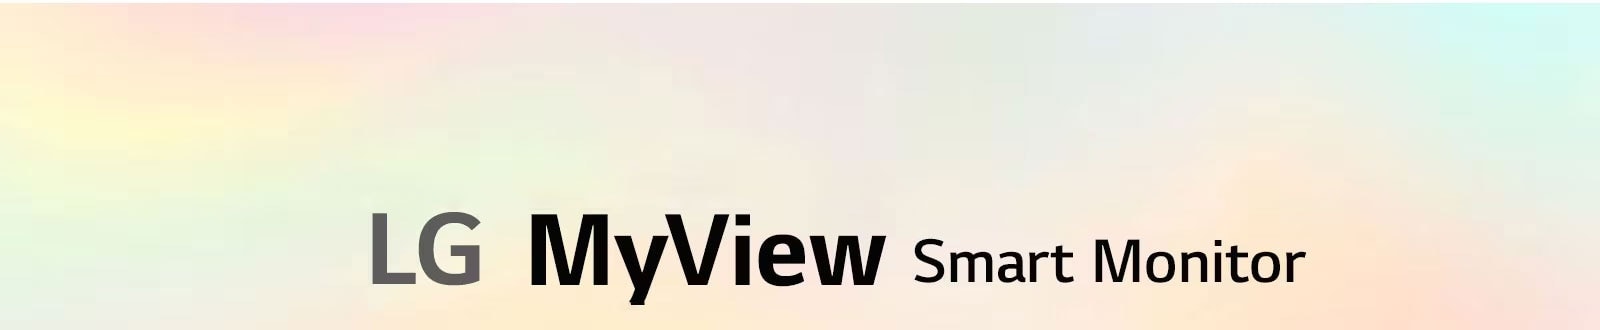 LG MyView Smart Monitor - jedan zaslon. Beskrajne mogućnosti..